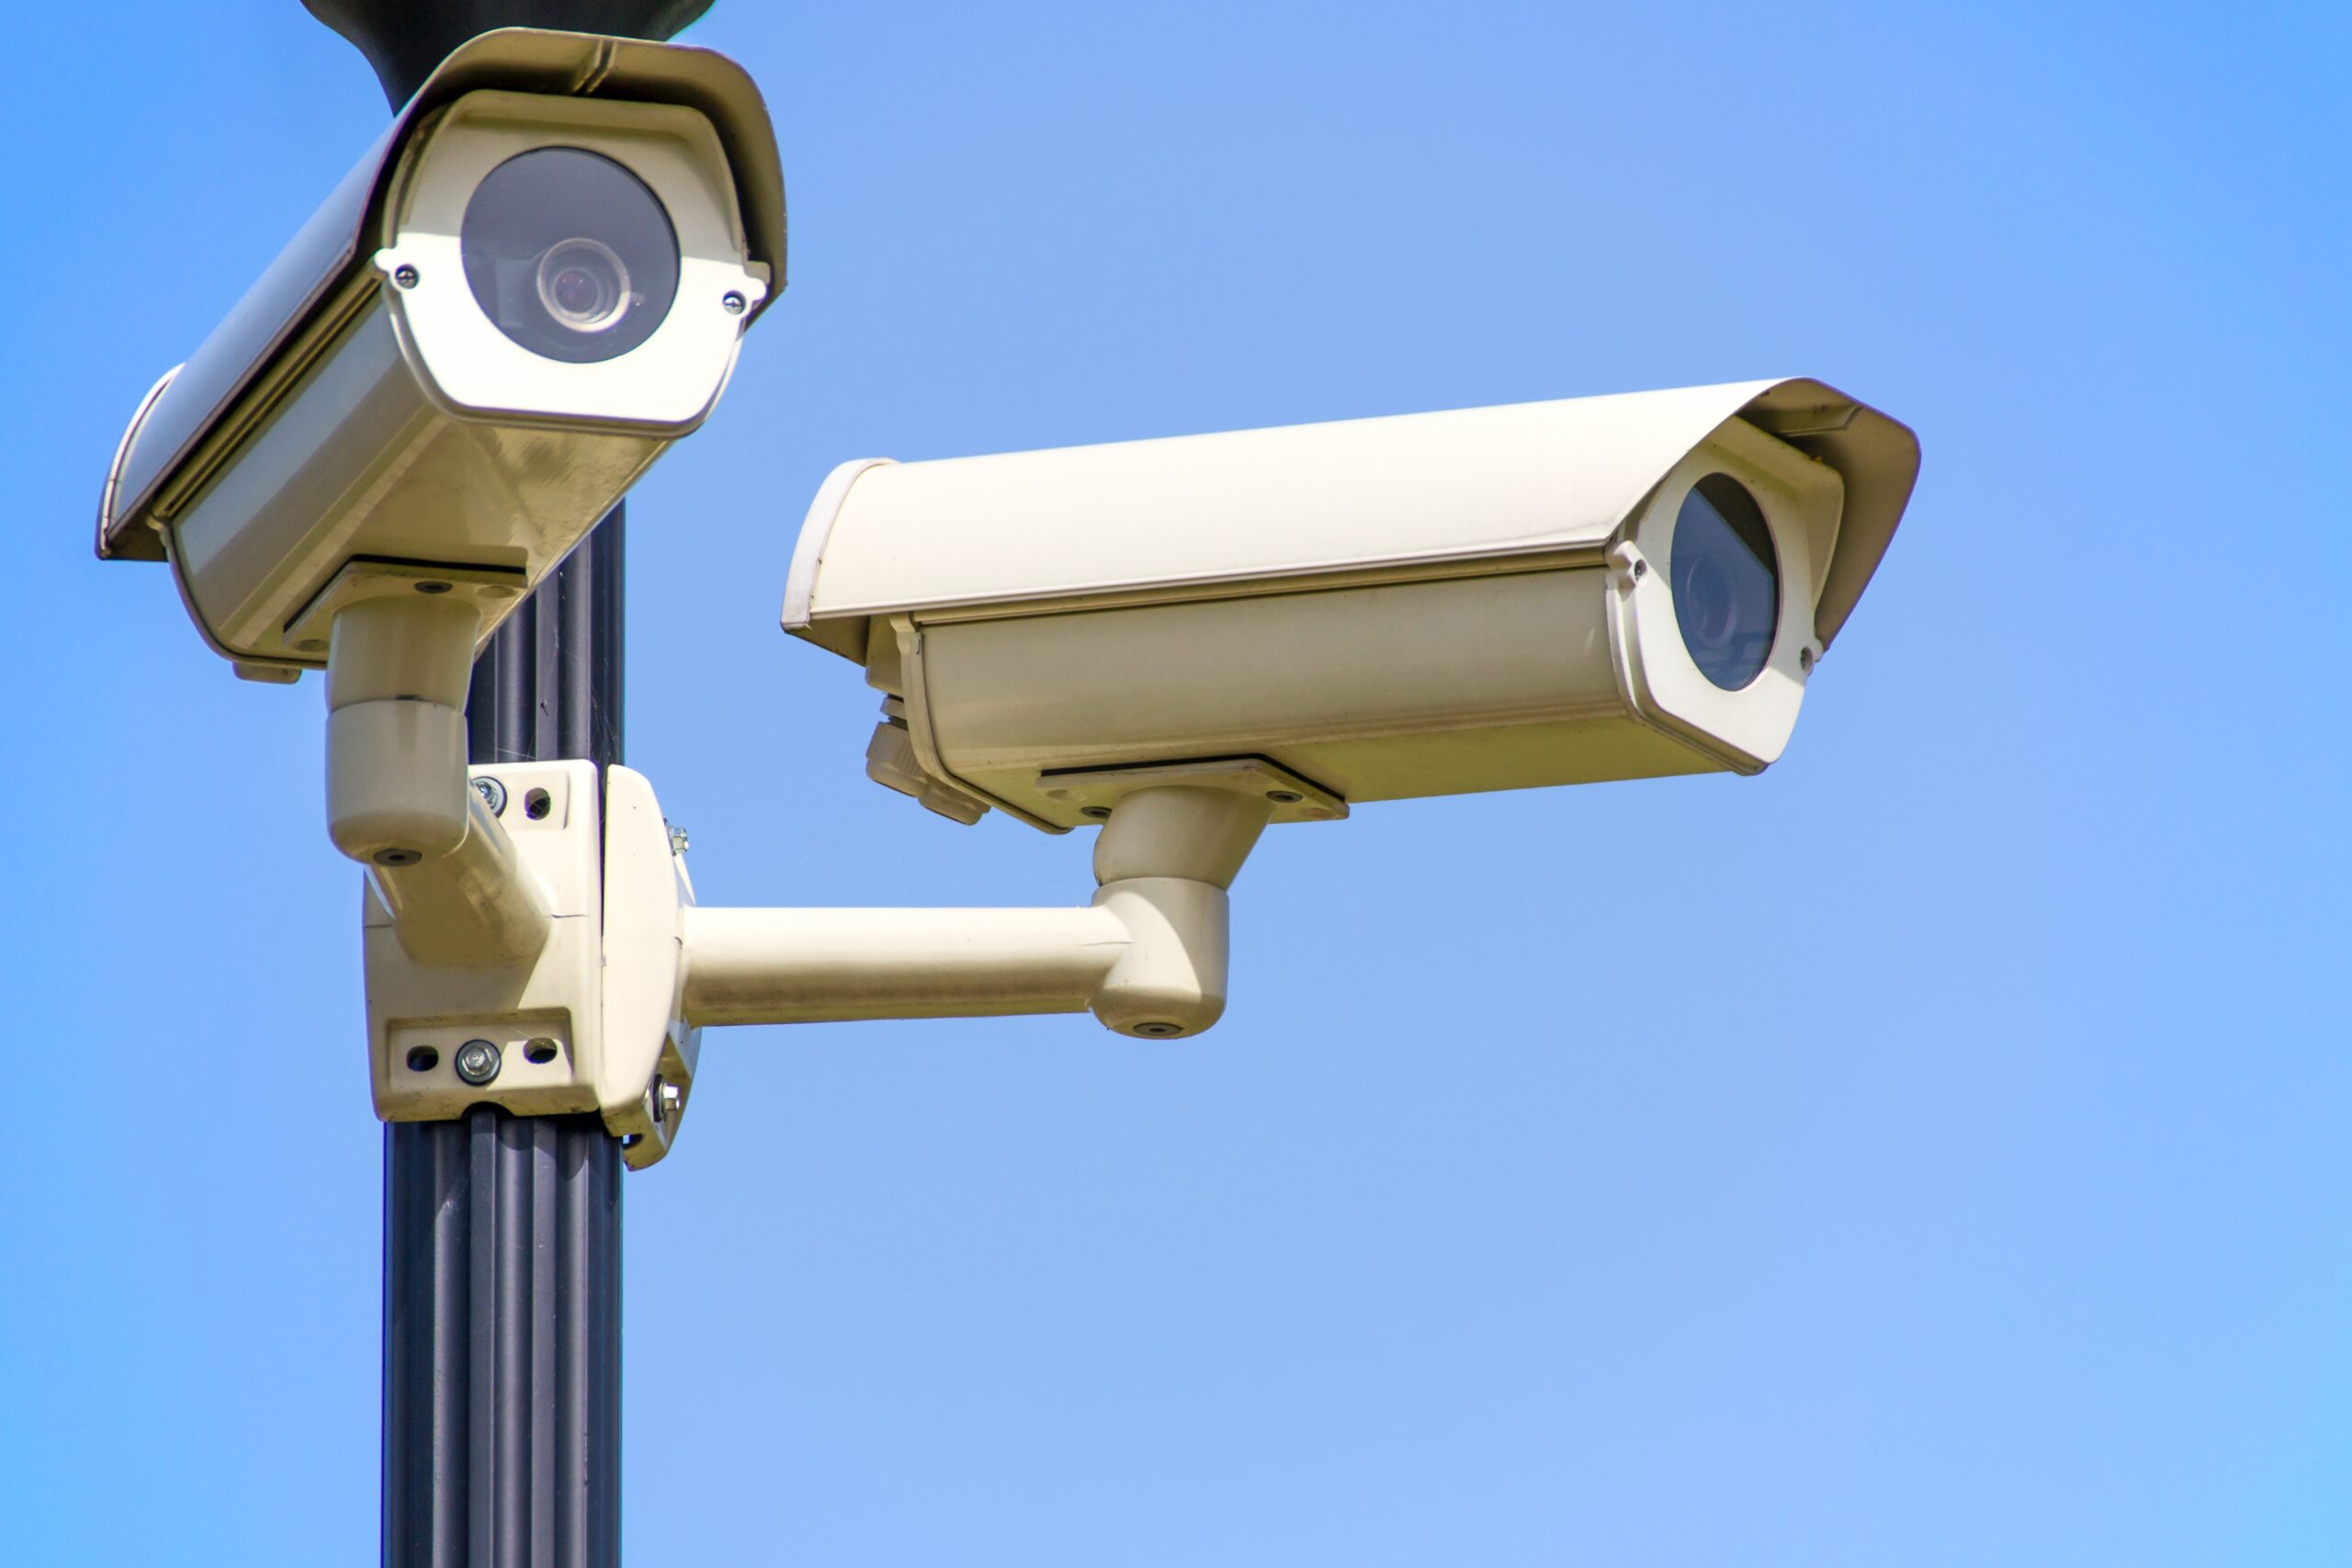 Säkerhet utan kompromisser: Kameraövervakning i vårdmiljöer